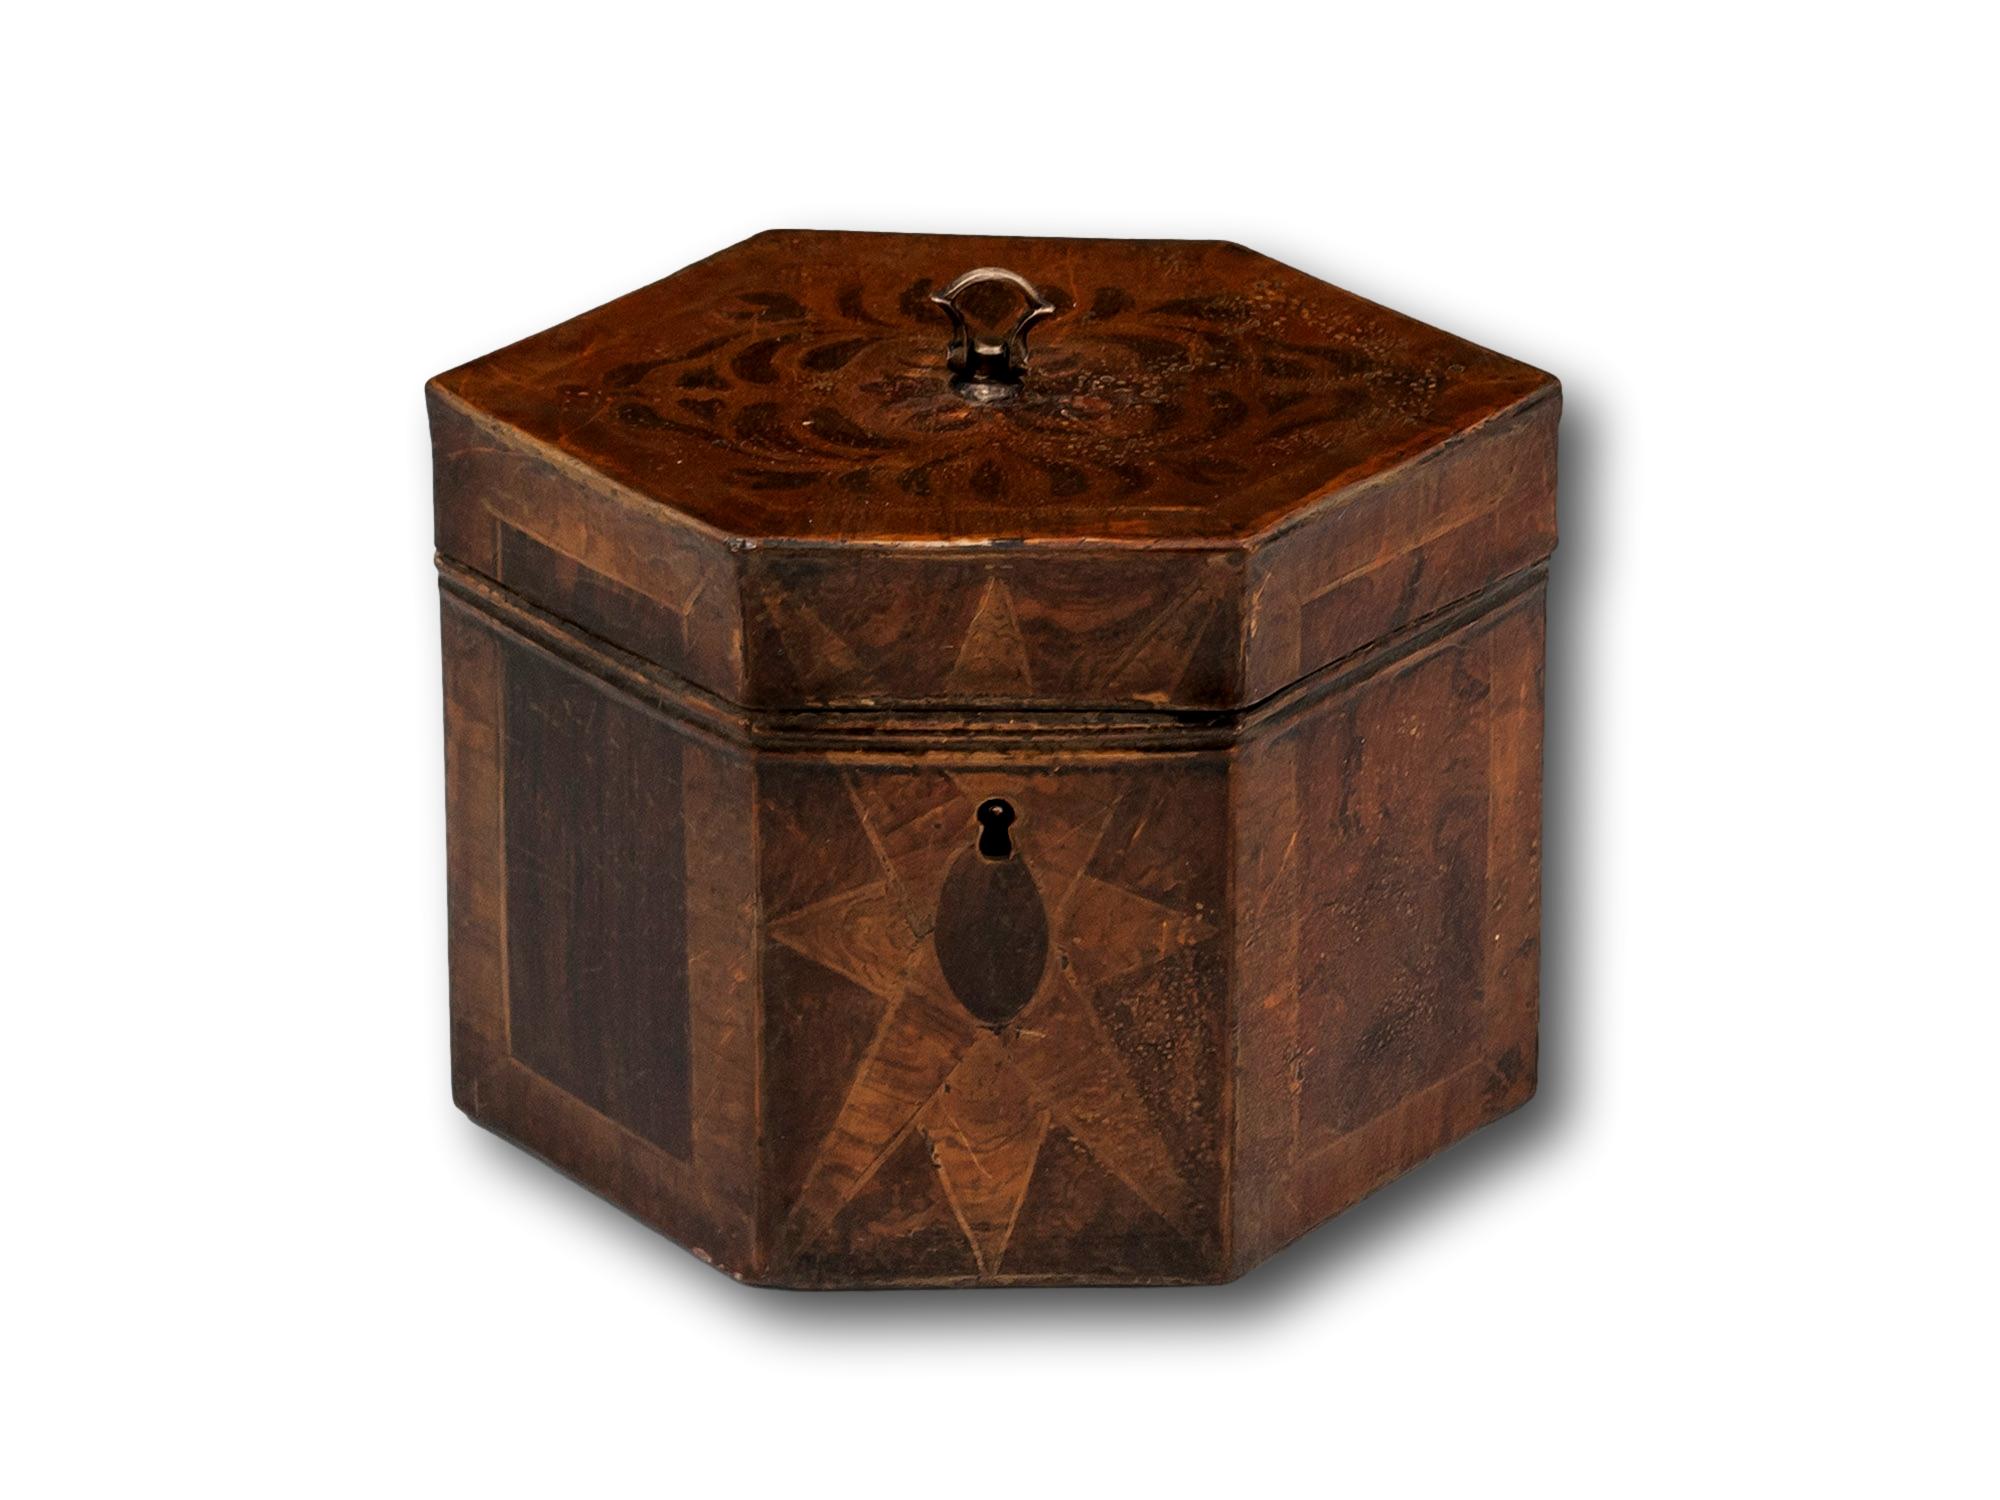 Boite à thé en simili bois 

Dans notre collection de boîtes à thé, nous avons le plaisir de vous proposer cette boîte à thé en fer-blanc. Le caddy de forme hexagonale est entièrement peint à la main avec un motif en bois simulé faisant appel à